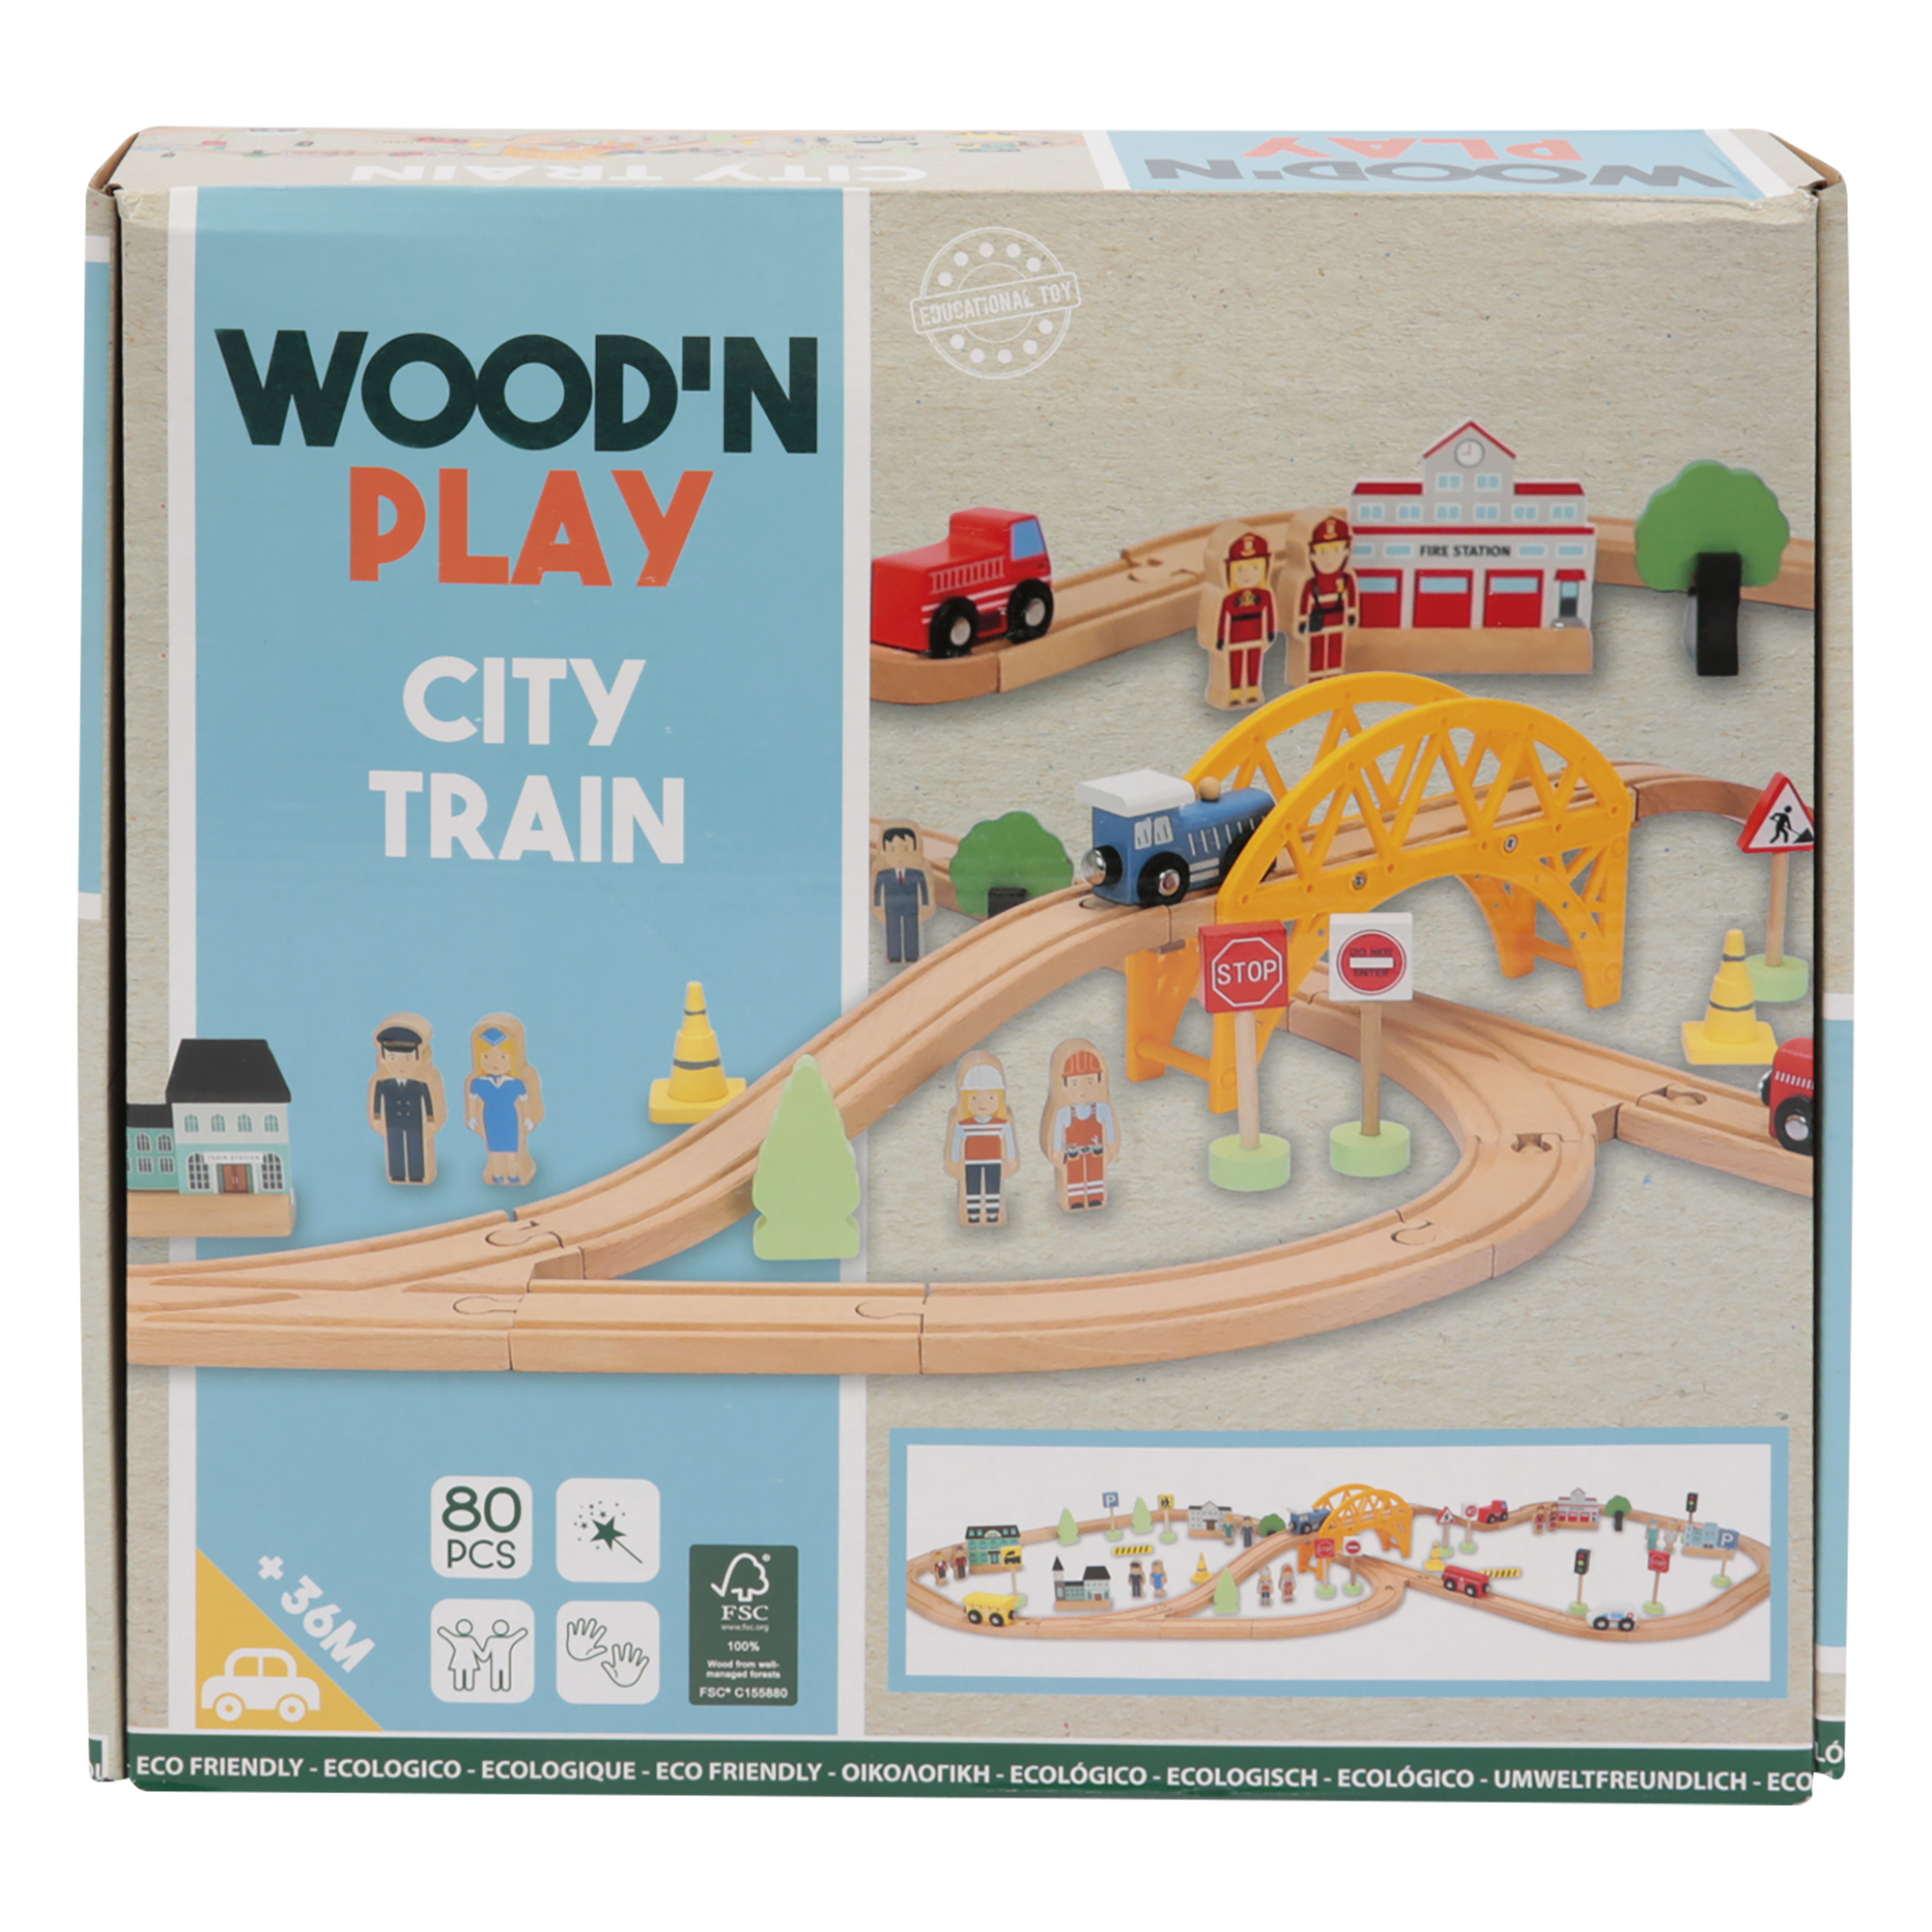 Trenino city - wood 'n' play - WOOD N'PLAY